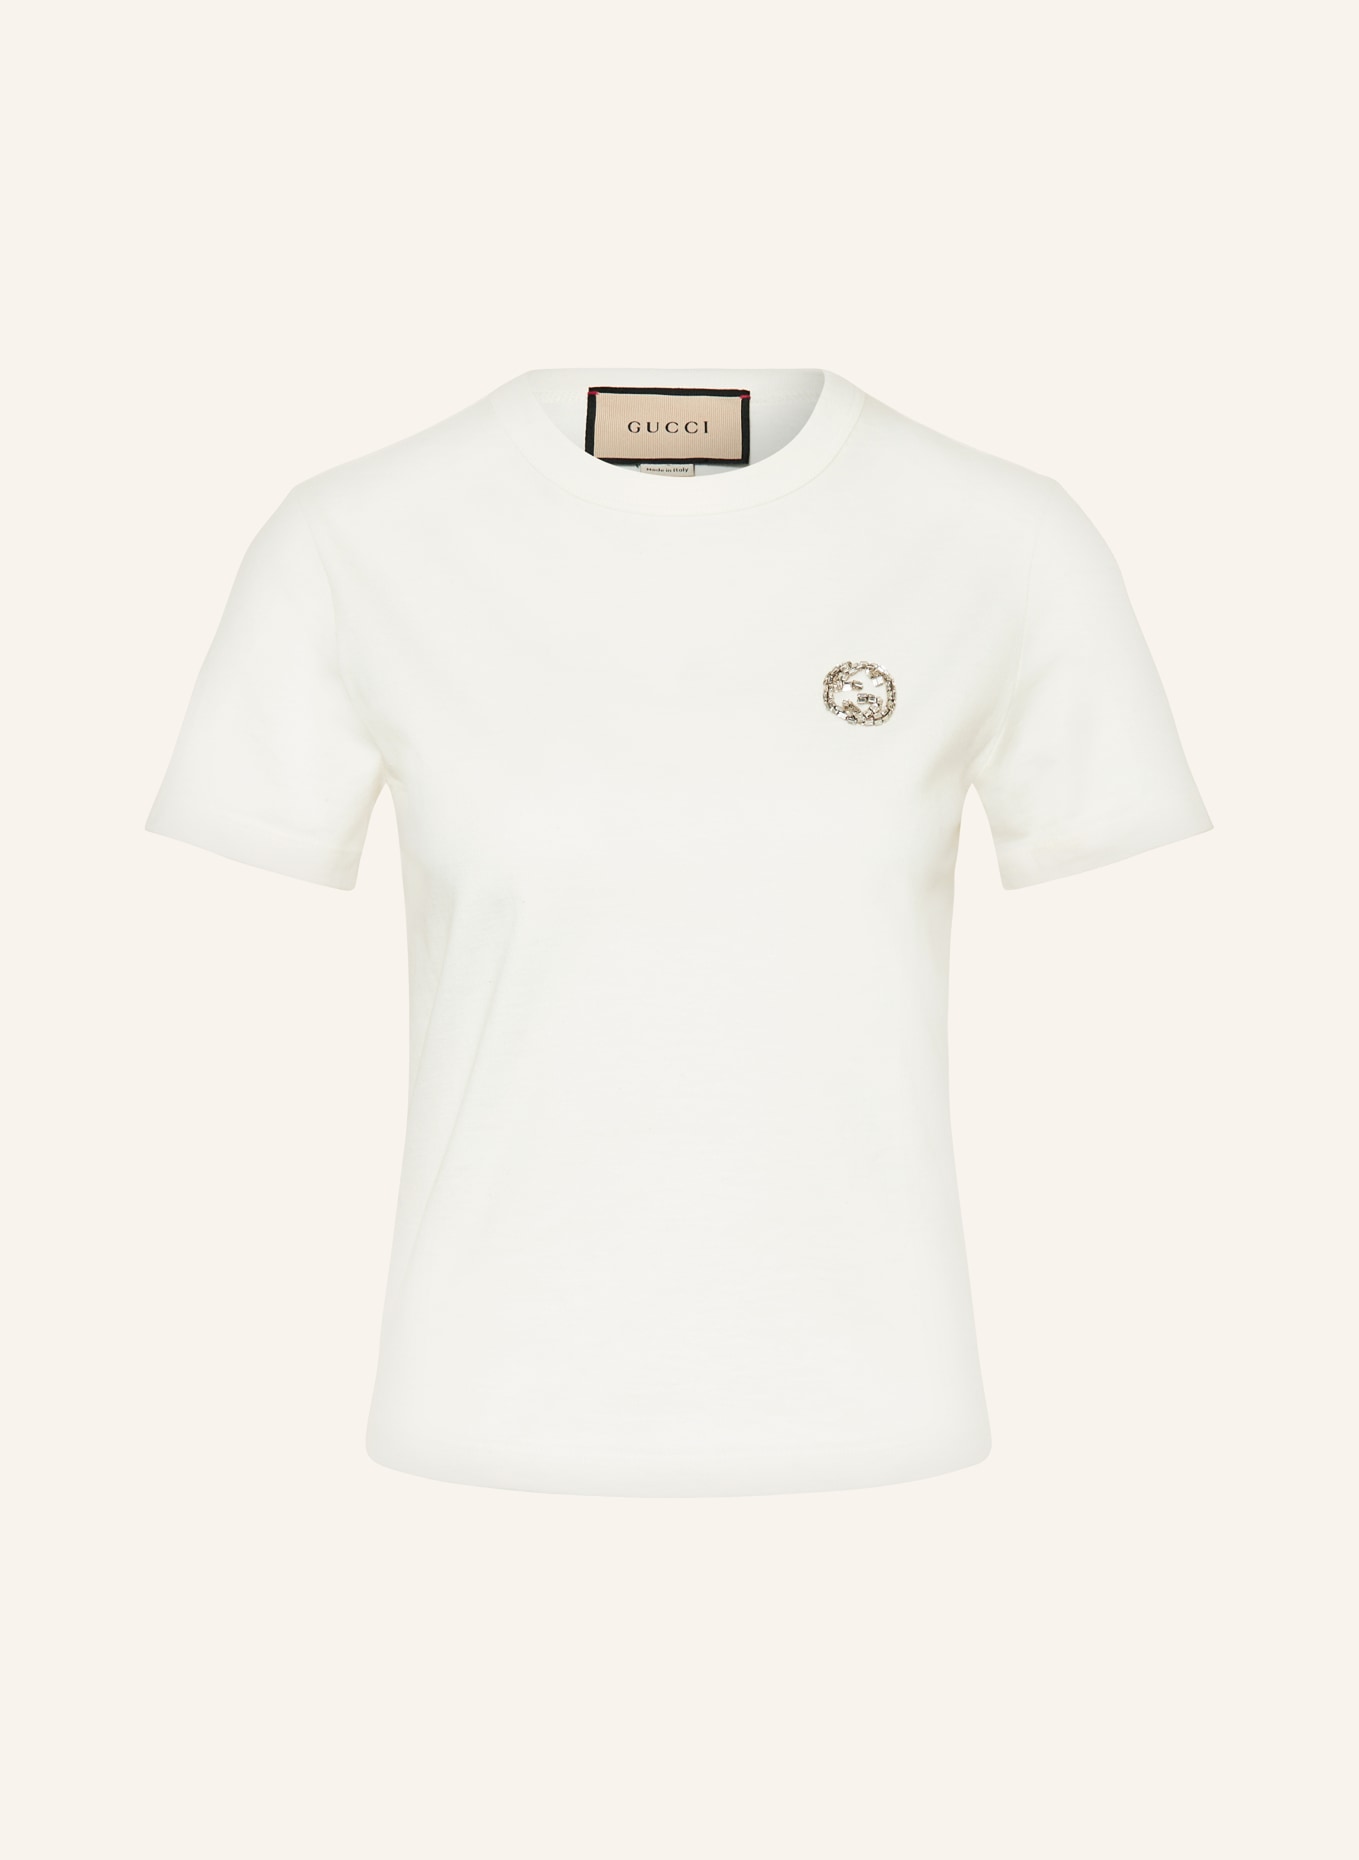 GUCCI T-Shirt mit Schmucksteinen, Farbe: HELLGELB (Bild 1)